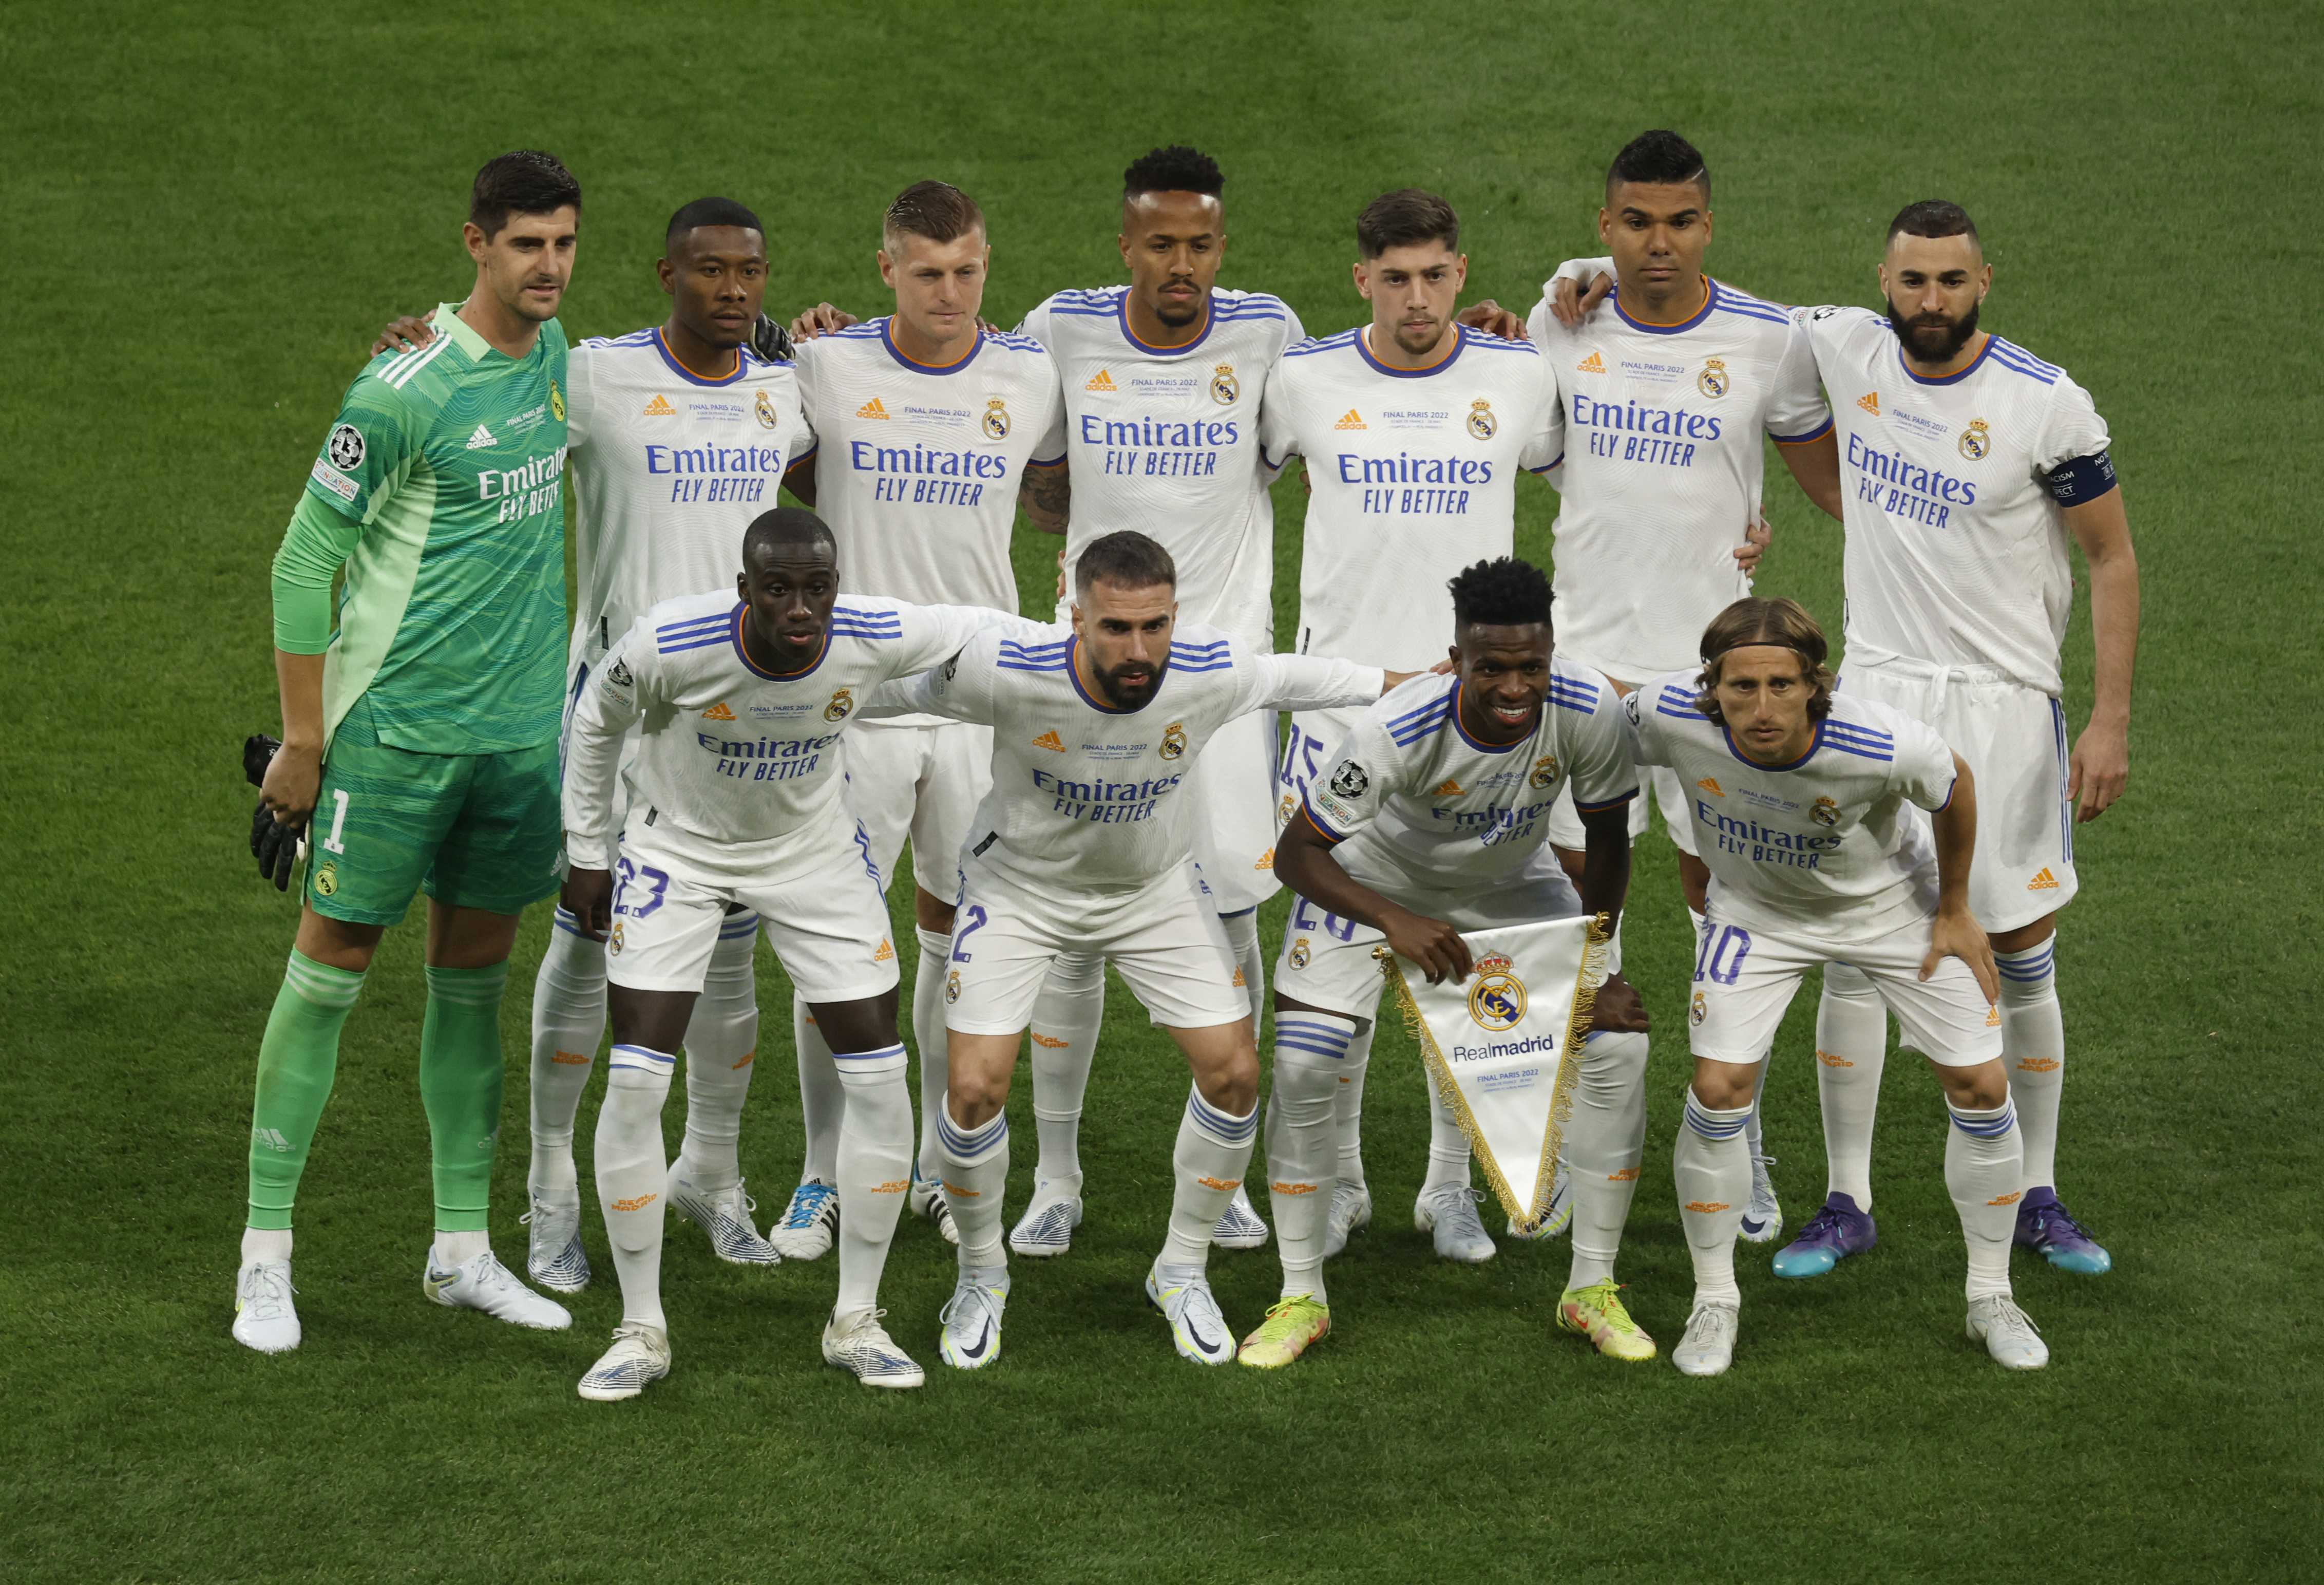 La formación del Real Madrid para disputar la final de la UEFA Champions League.